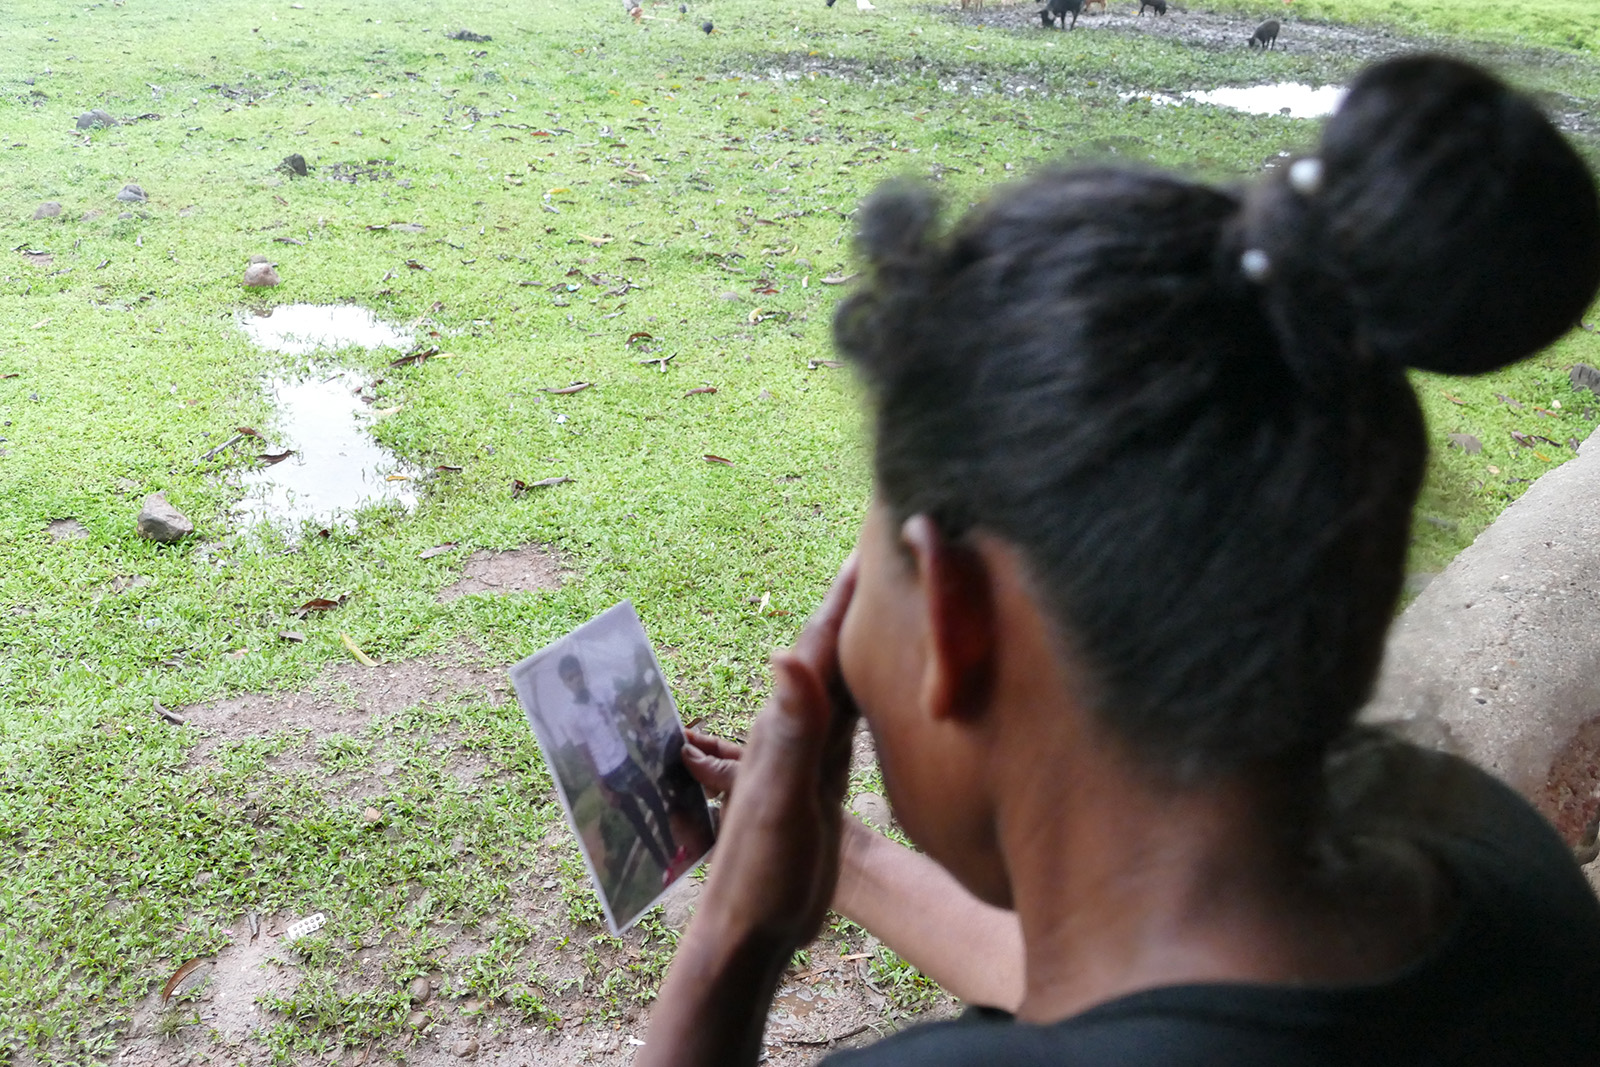 Colonos usan armas de guerra contra indígenas en Nicaragua